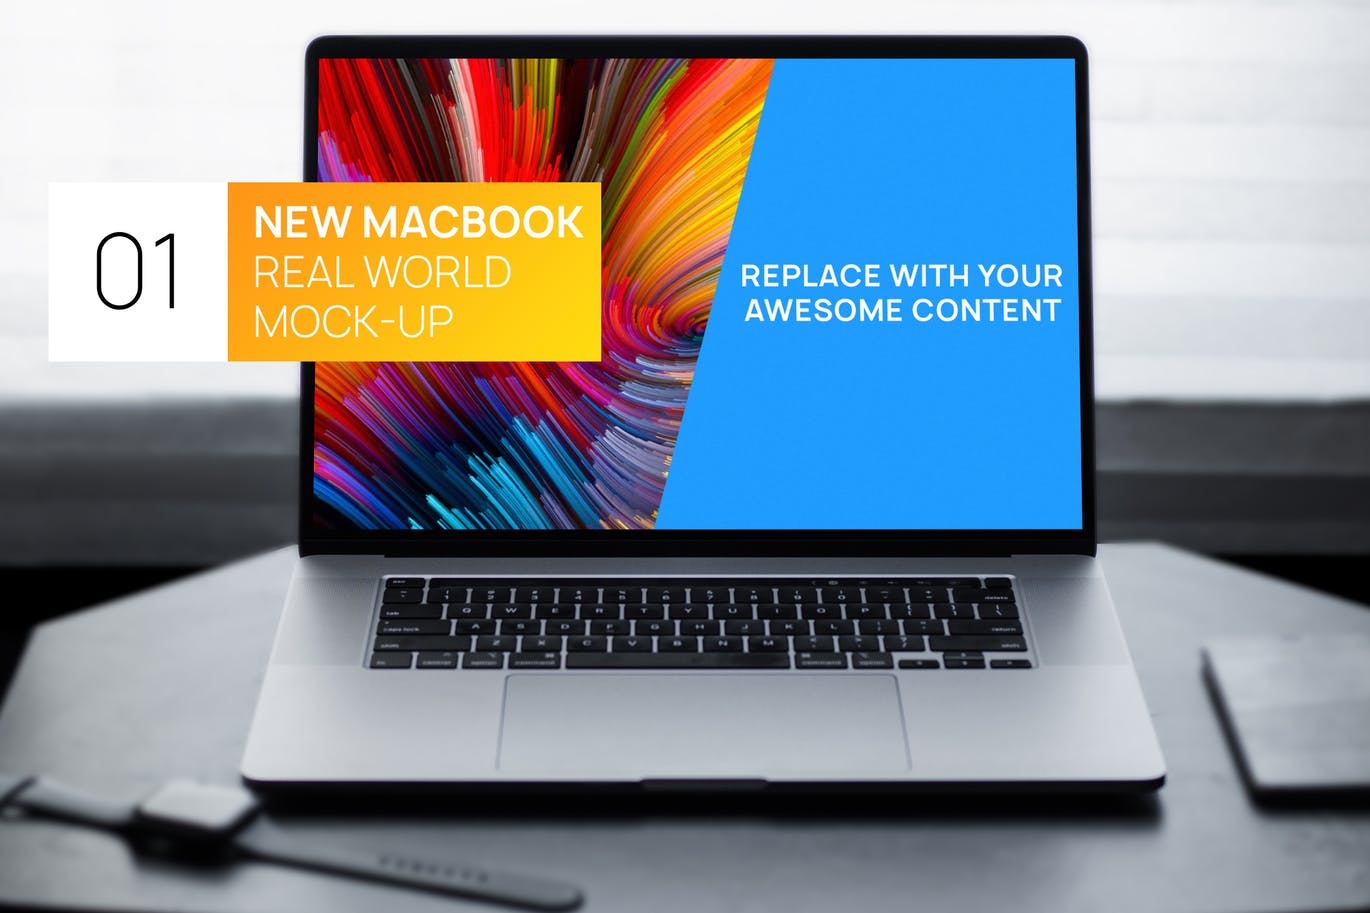 简约风格灰黑场景MacBook电脑屏幕演示素材中国精选样机 New MacBook Touchbar Dark Photo Real World Mock-up插图